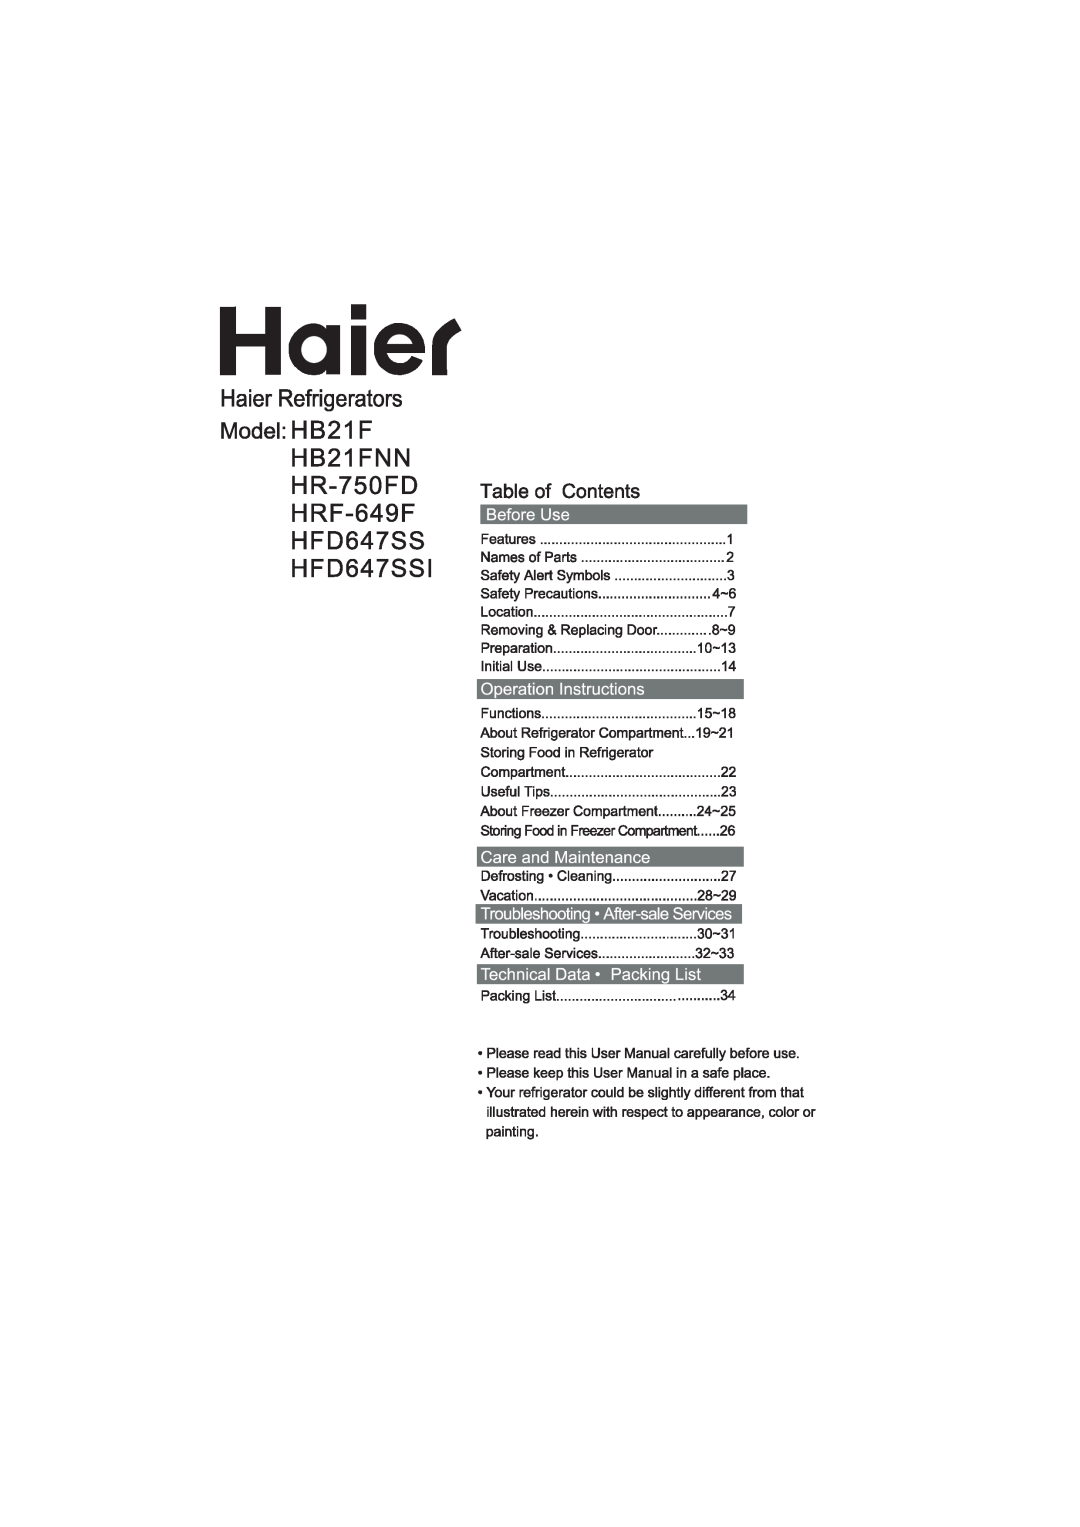 Haier HTD647SS, HTD647ASS manual 